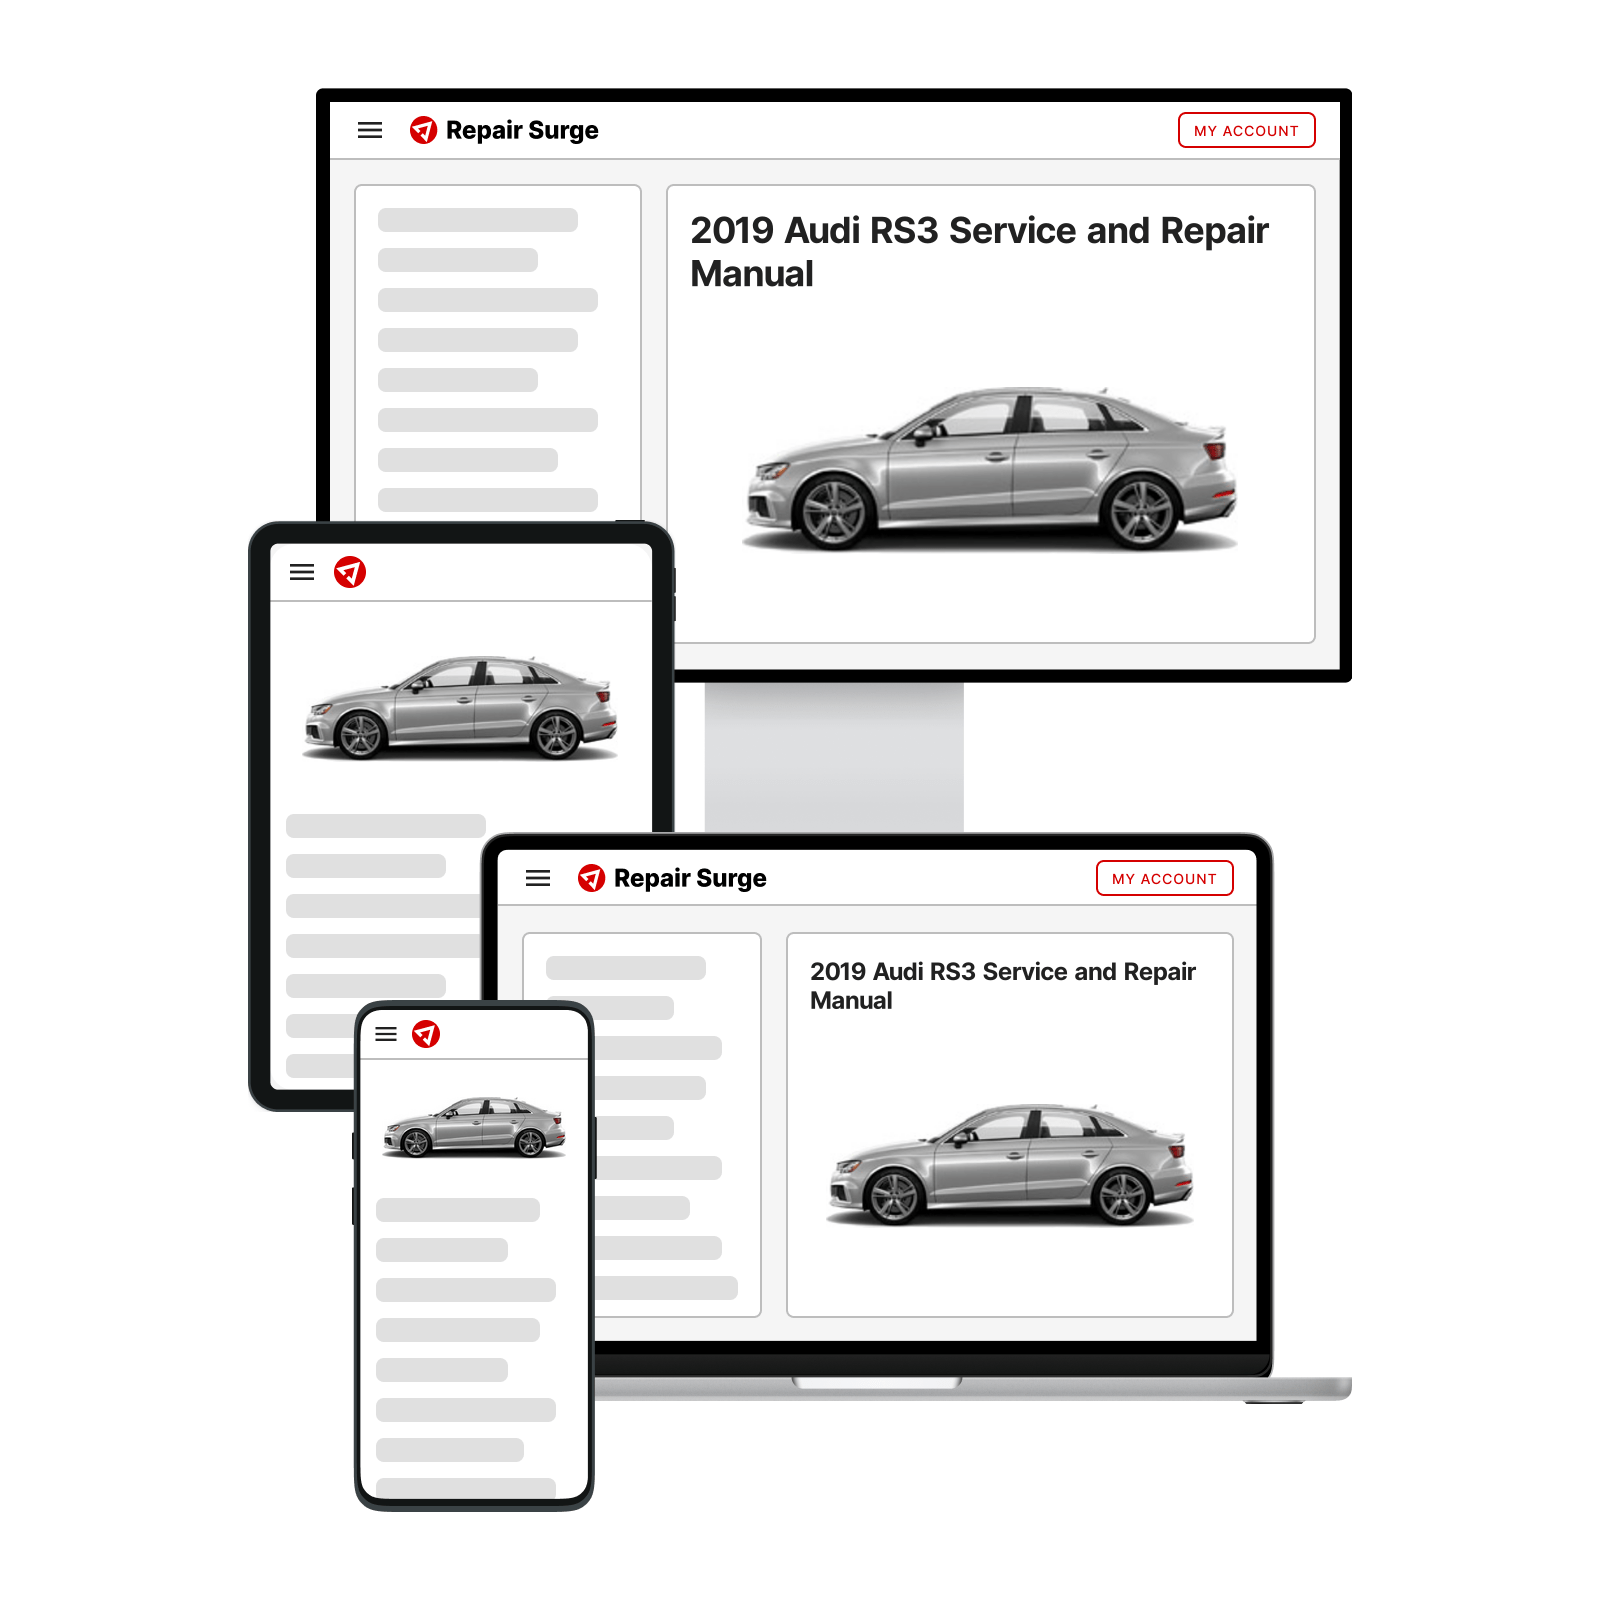 2019 Audi RS3 service and repair manual hero image